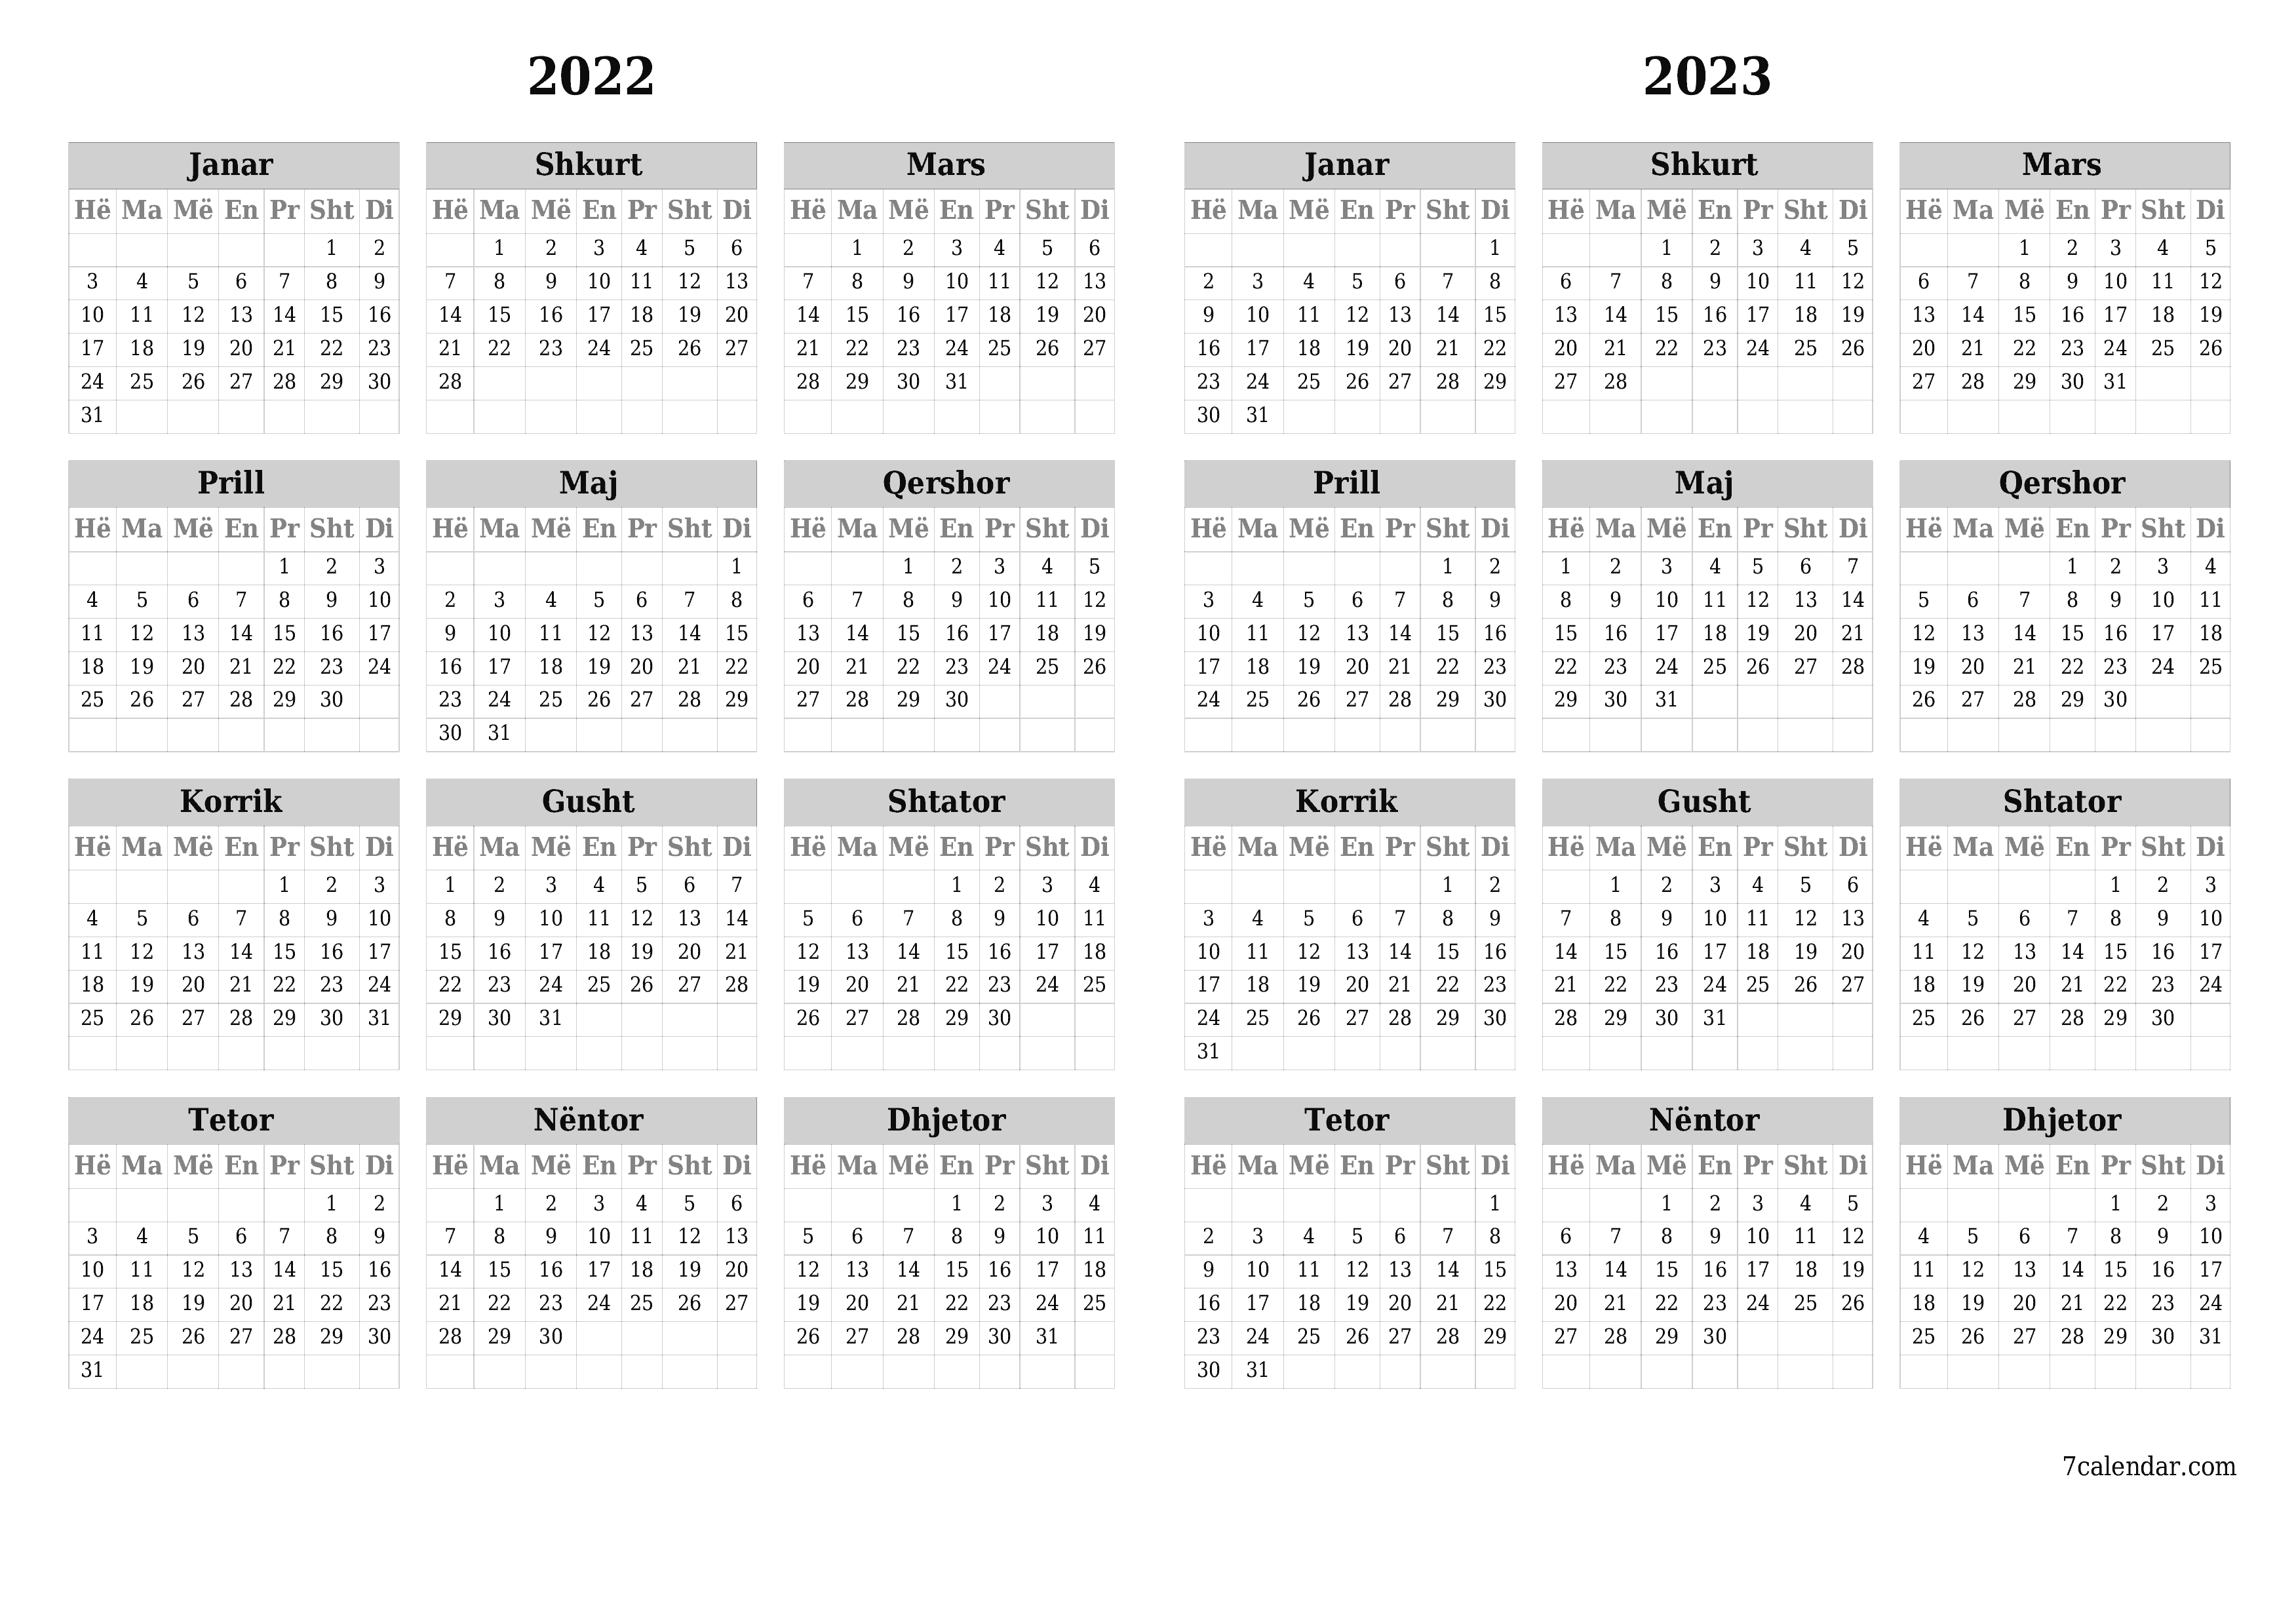 Kalendari bosh vjetor për vitin 2022, 2023 ruaj dhe printo në PDF PNG Albanian - 7calendar.com